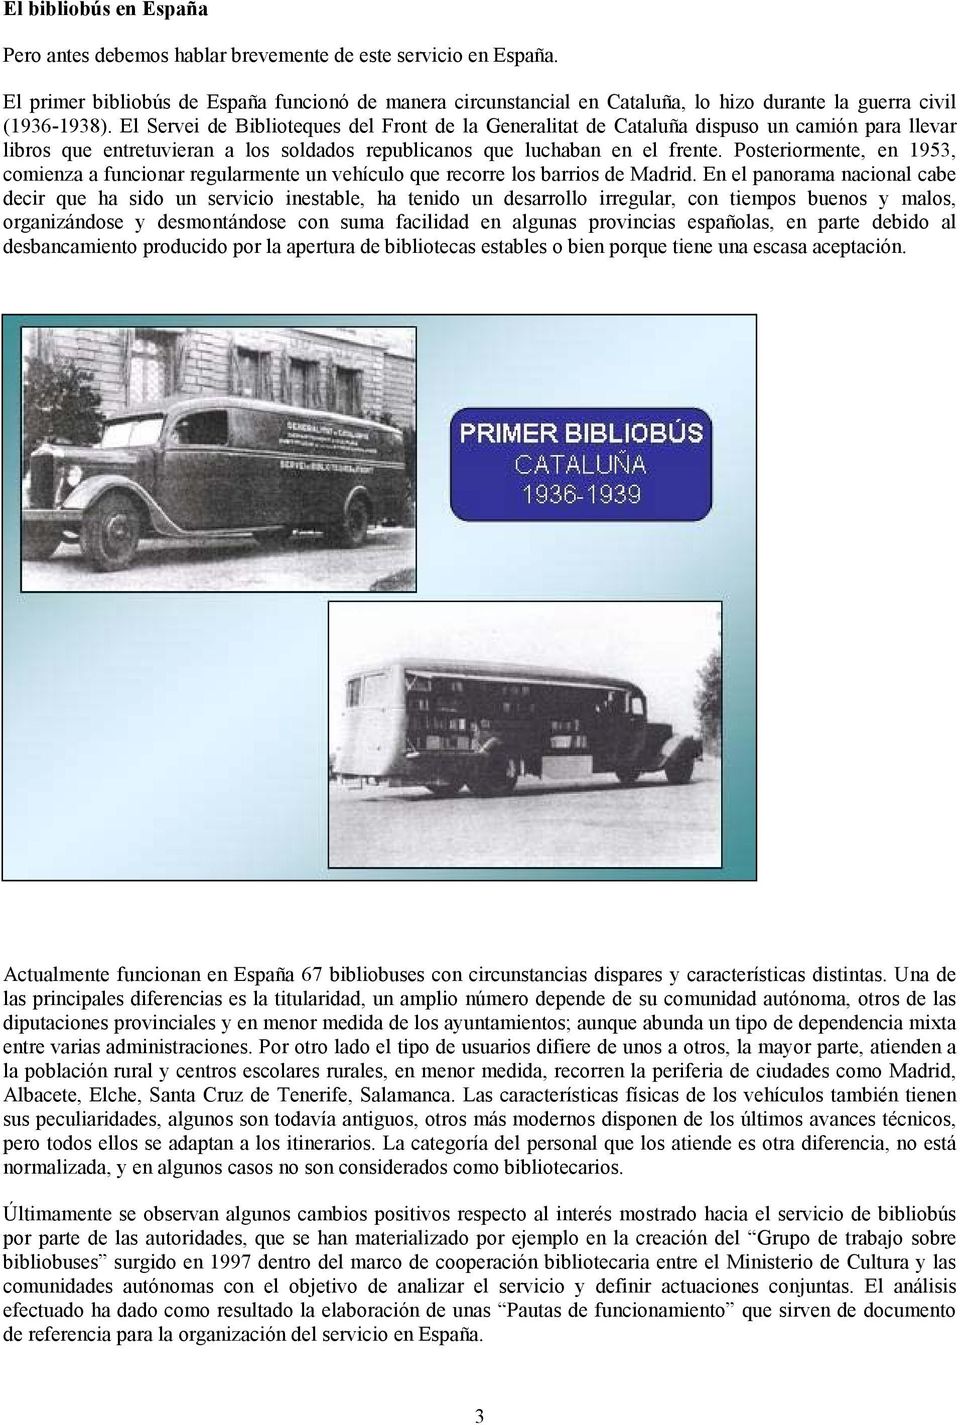 El Servei de Biblioteques del Front de la Generalitat de Cataluña dispuso un camión para llevar libros que entretuvieran a los soldados republicanos que luchaban en el frente.